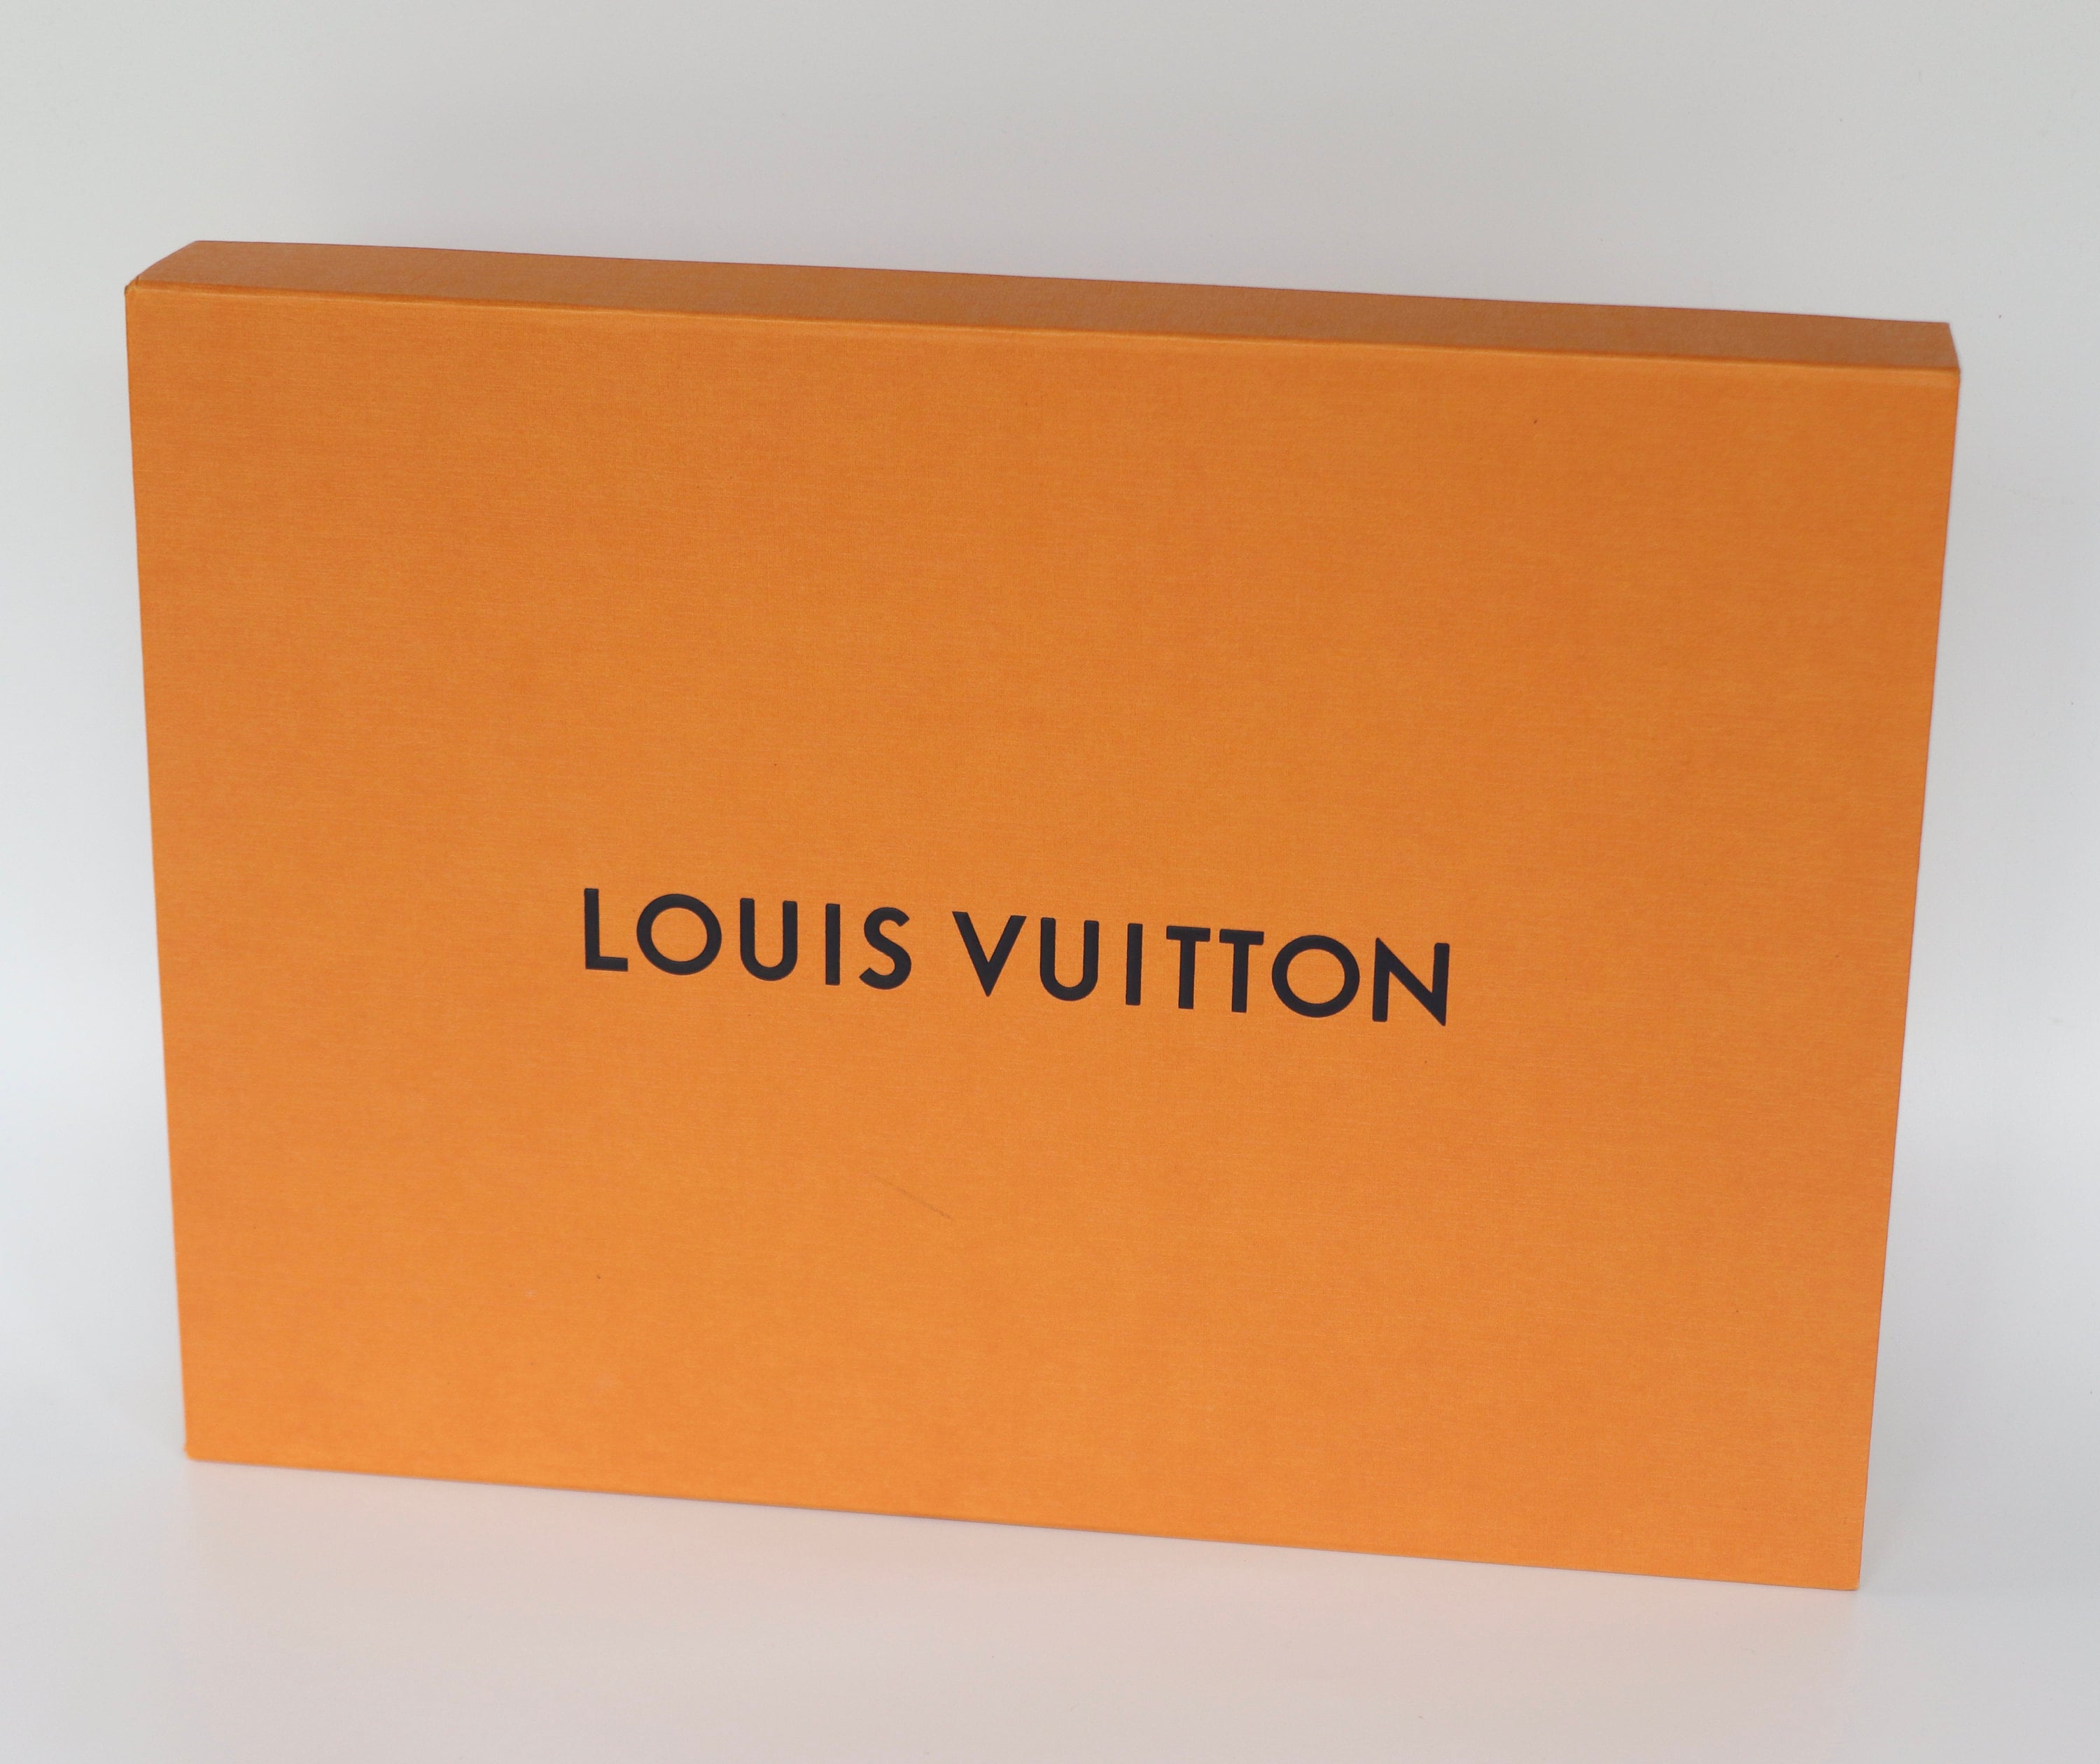 Louis Vuitton Gift Box and LV Ribbon  Louis vuitton gifts, Louis vuitton,  Vuitton box